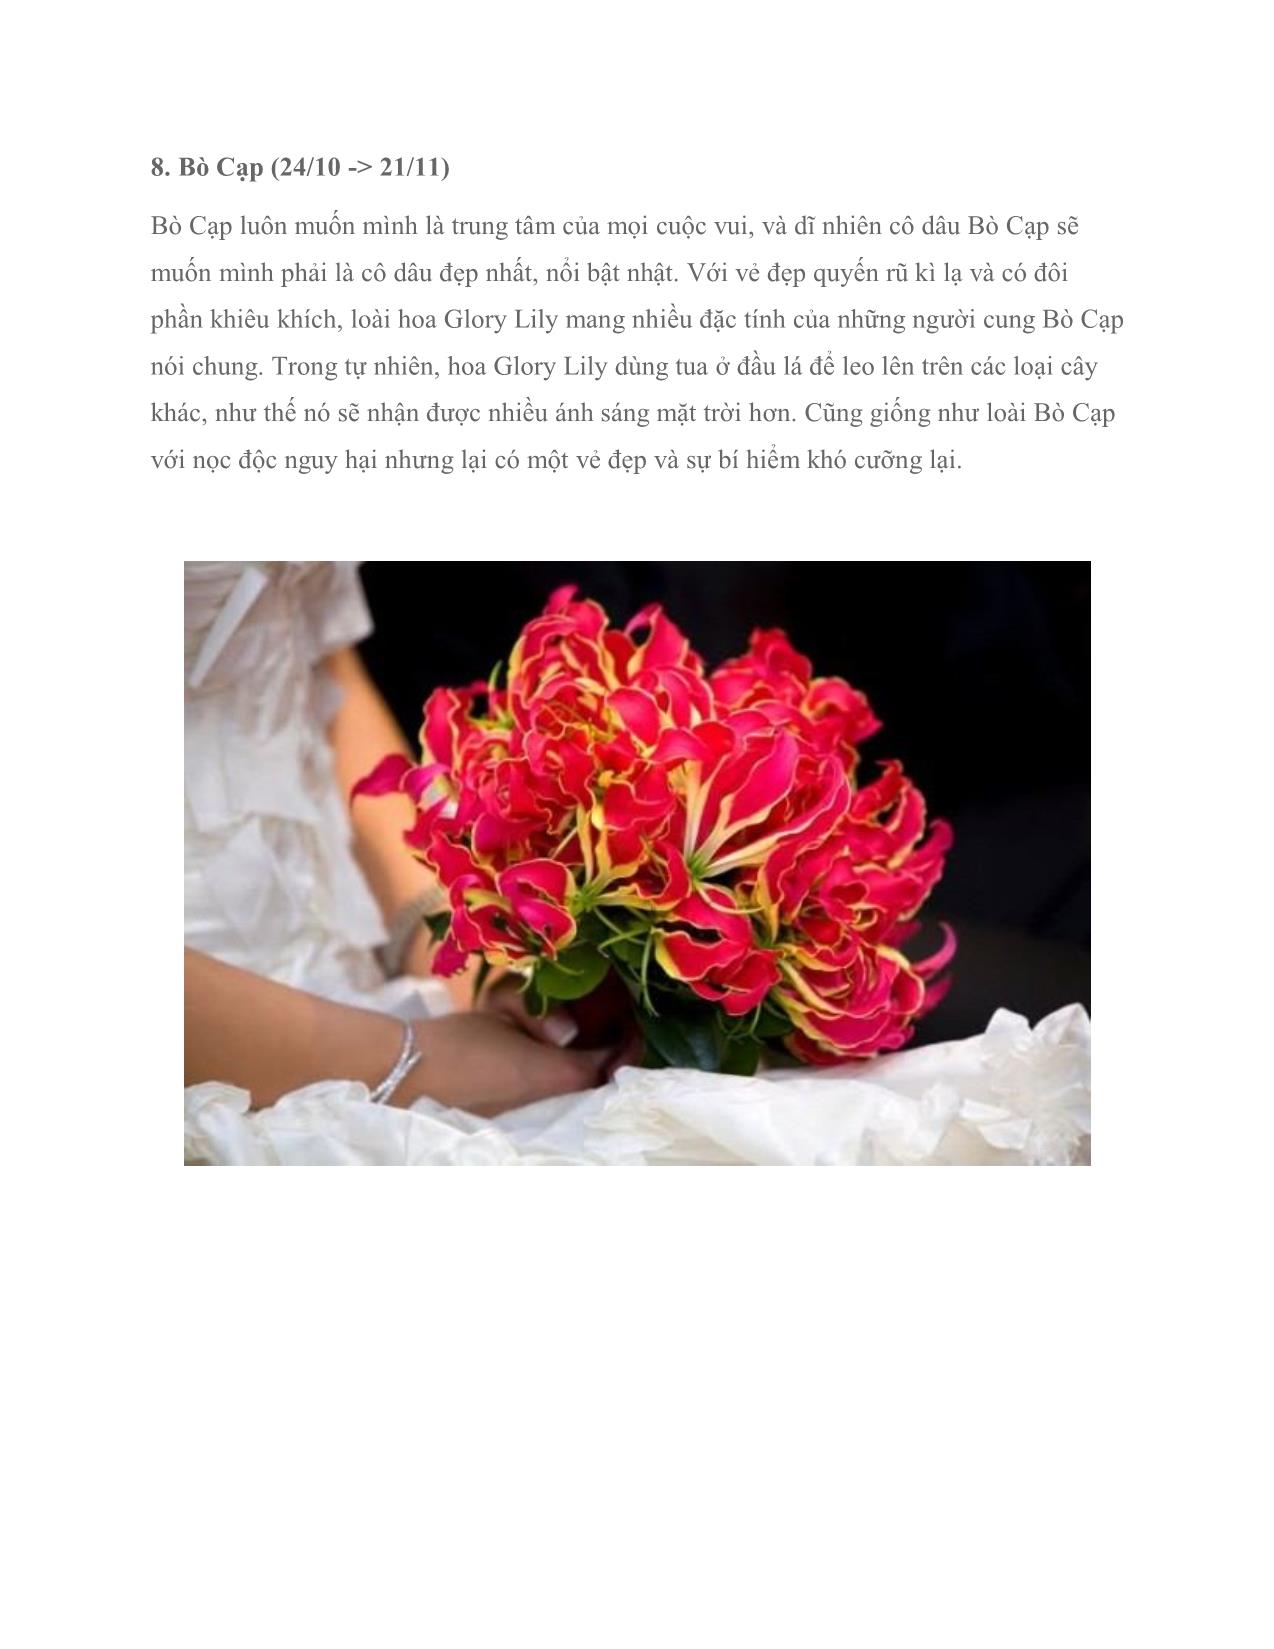 Chọn hoa cưới theo cung hoàng đạo (tiếp) trang 2